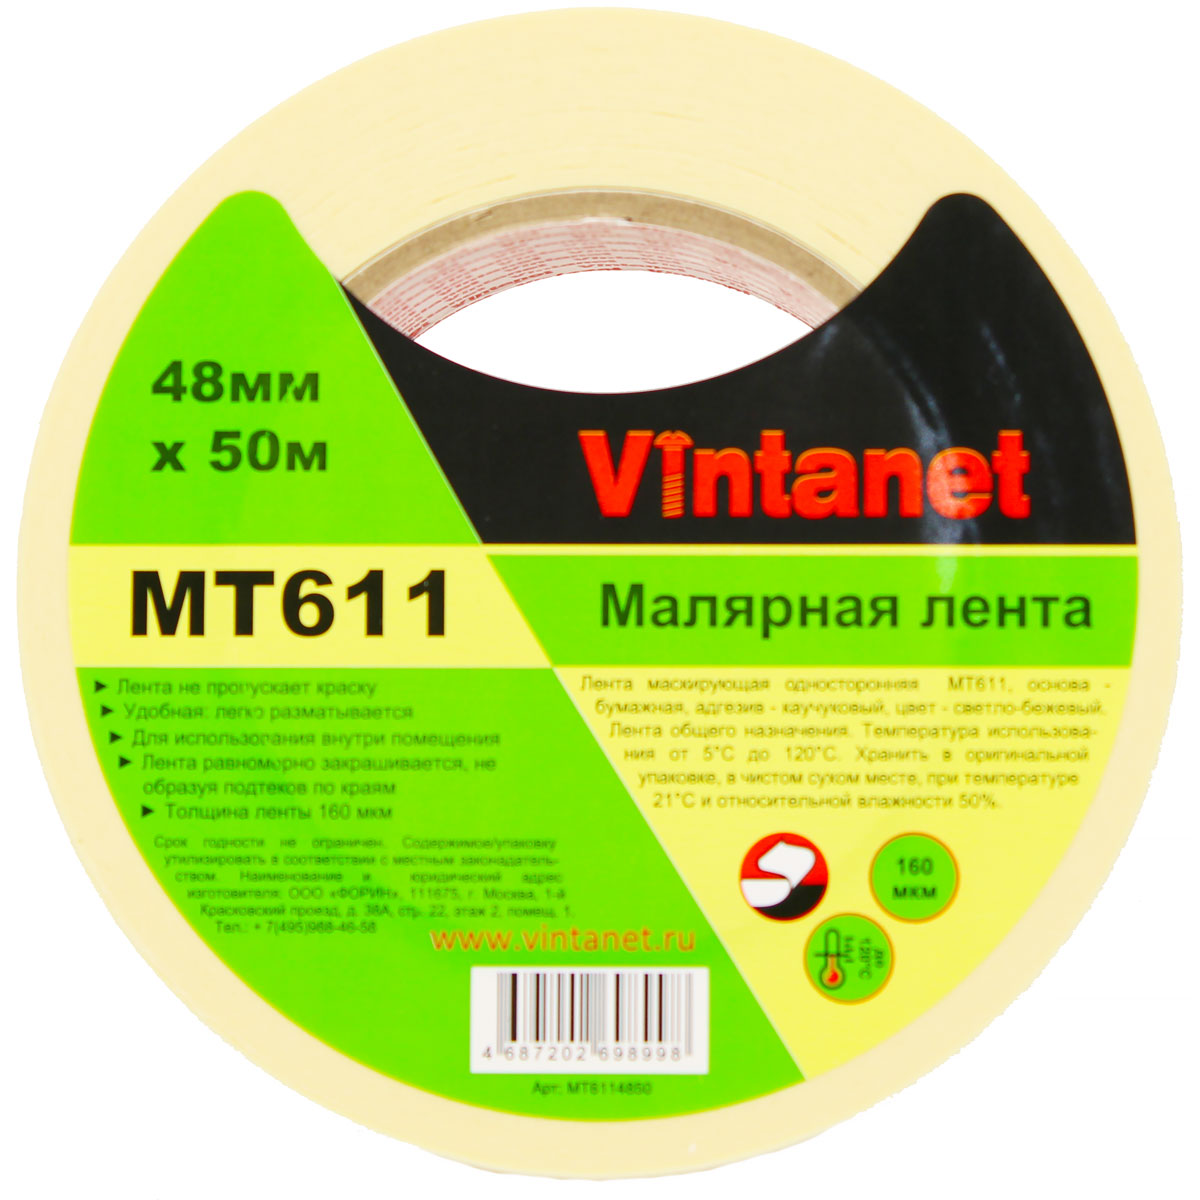 Лента малярная высокотемпературная Vintanet MT611, 120 С, 160 мкм, 48мм х 50м, MT6114850 малярная клейкая лента x glass